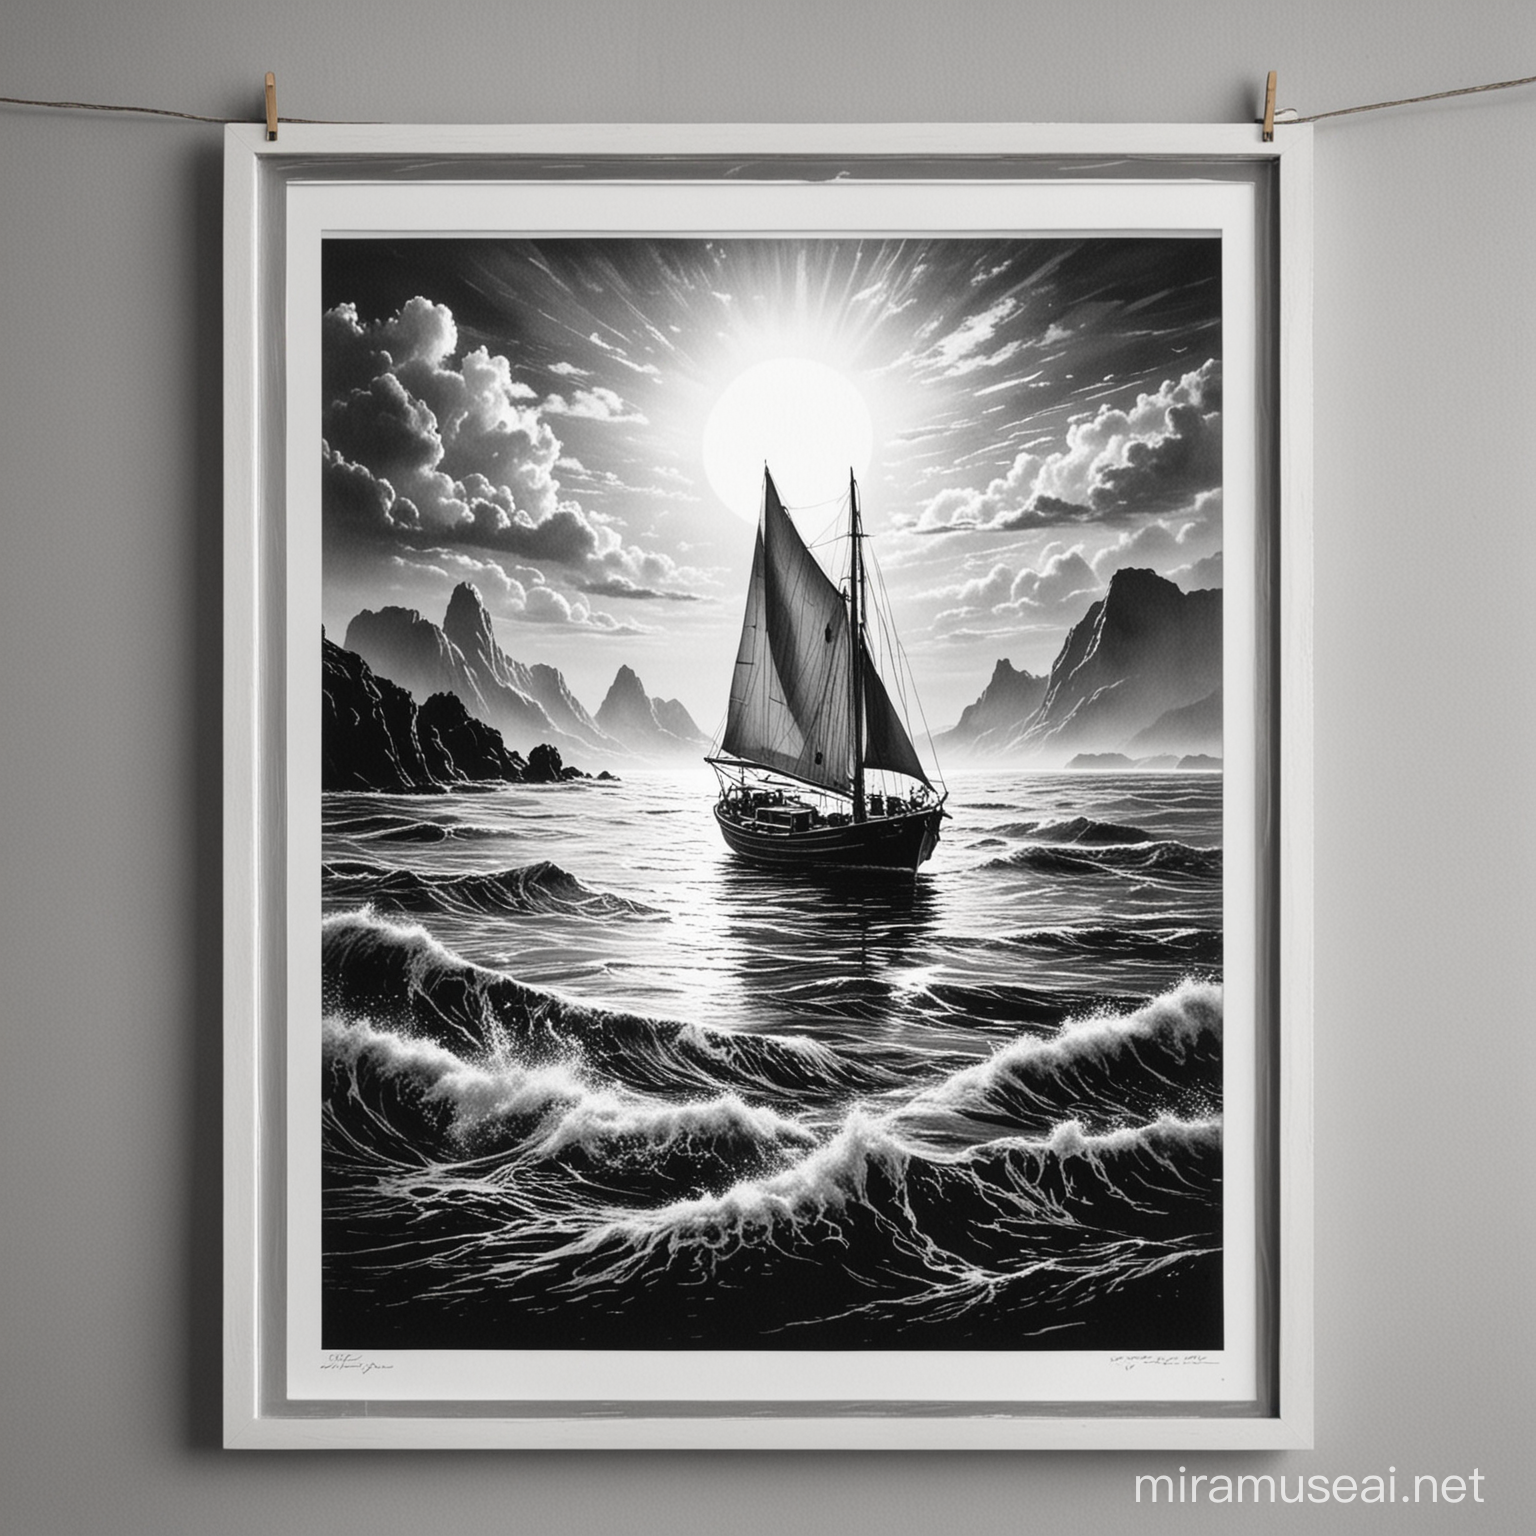 Boat in the seaLinocut Print in Striking Monochrome